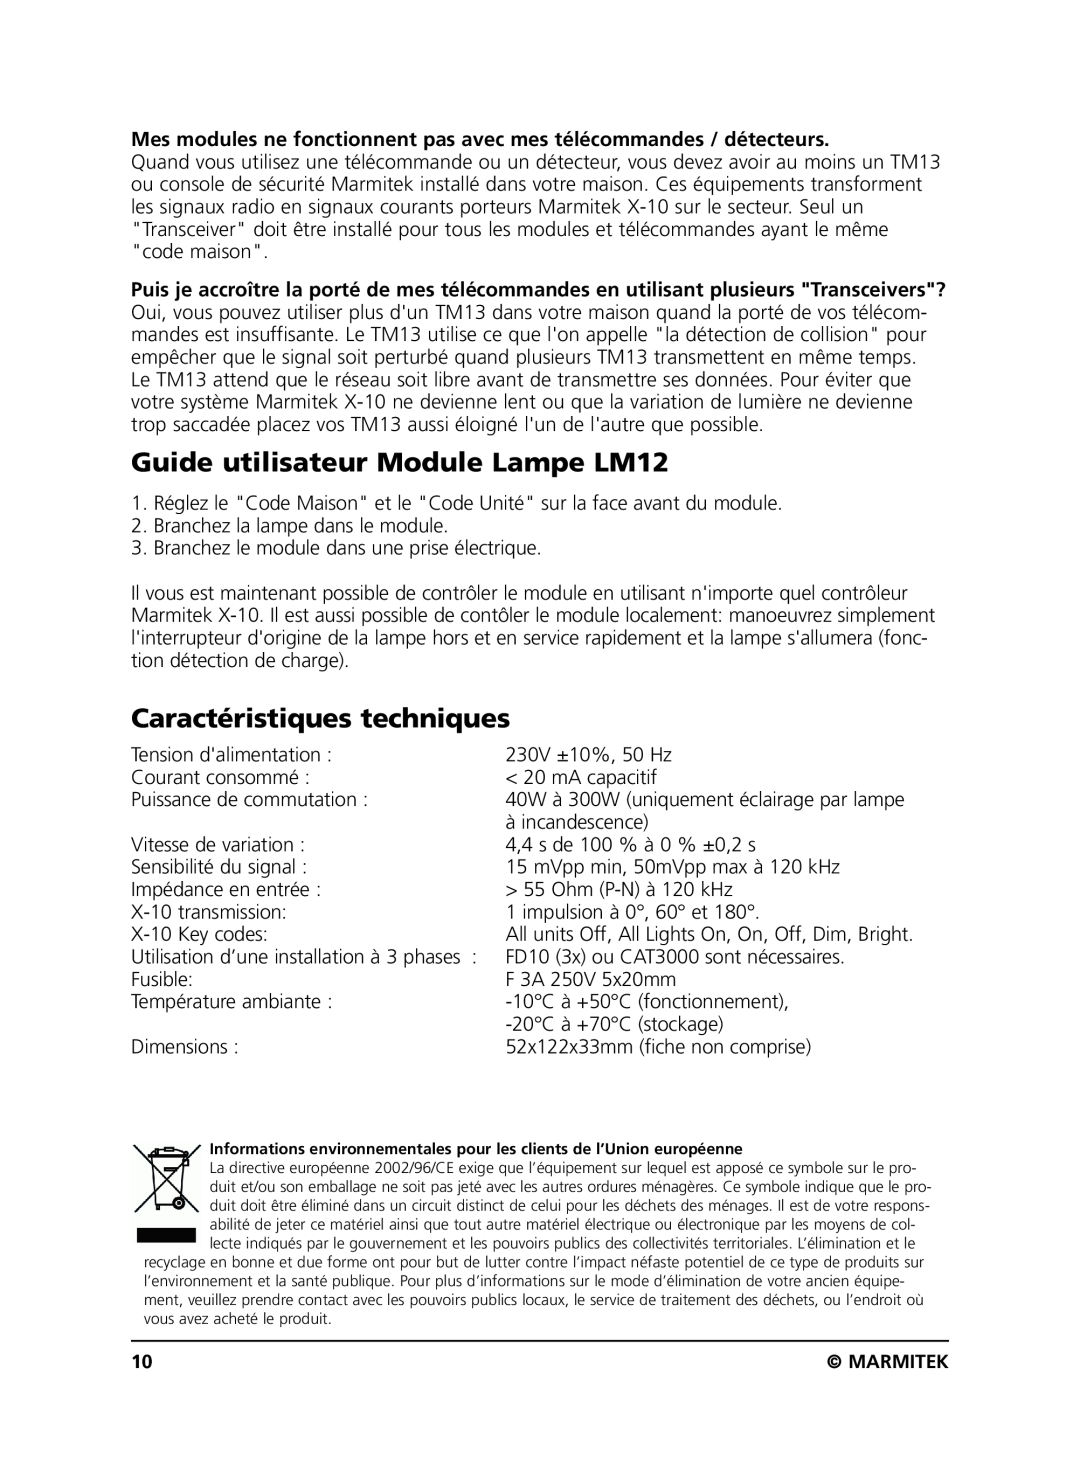 Marmitek user manual Guide utilisateur Module Lampe LM12, Caractéristiques techniques 